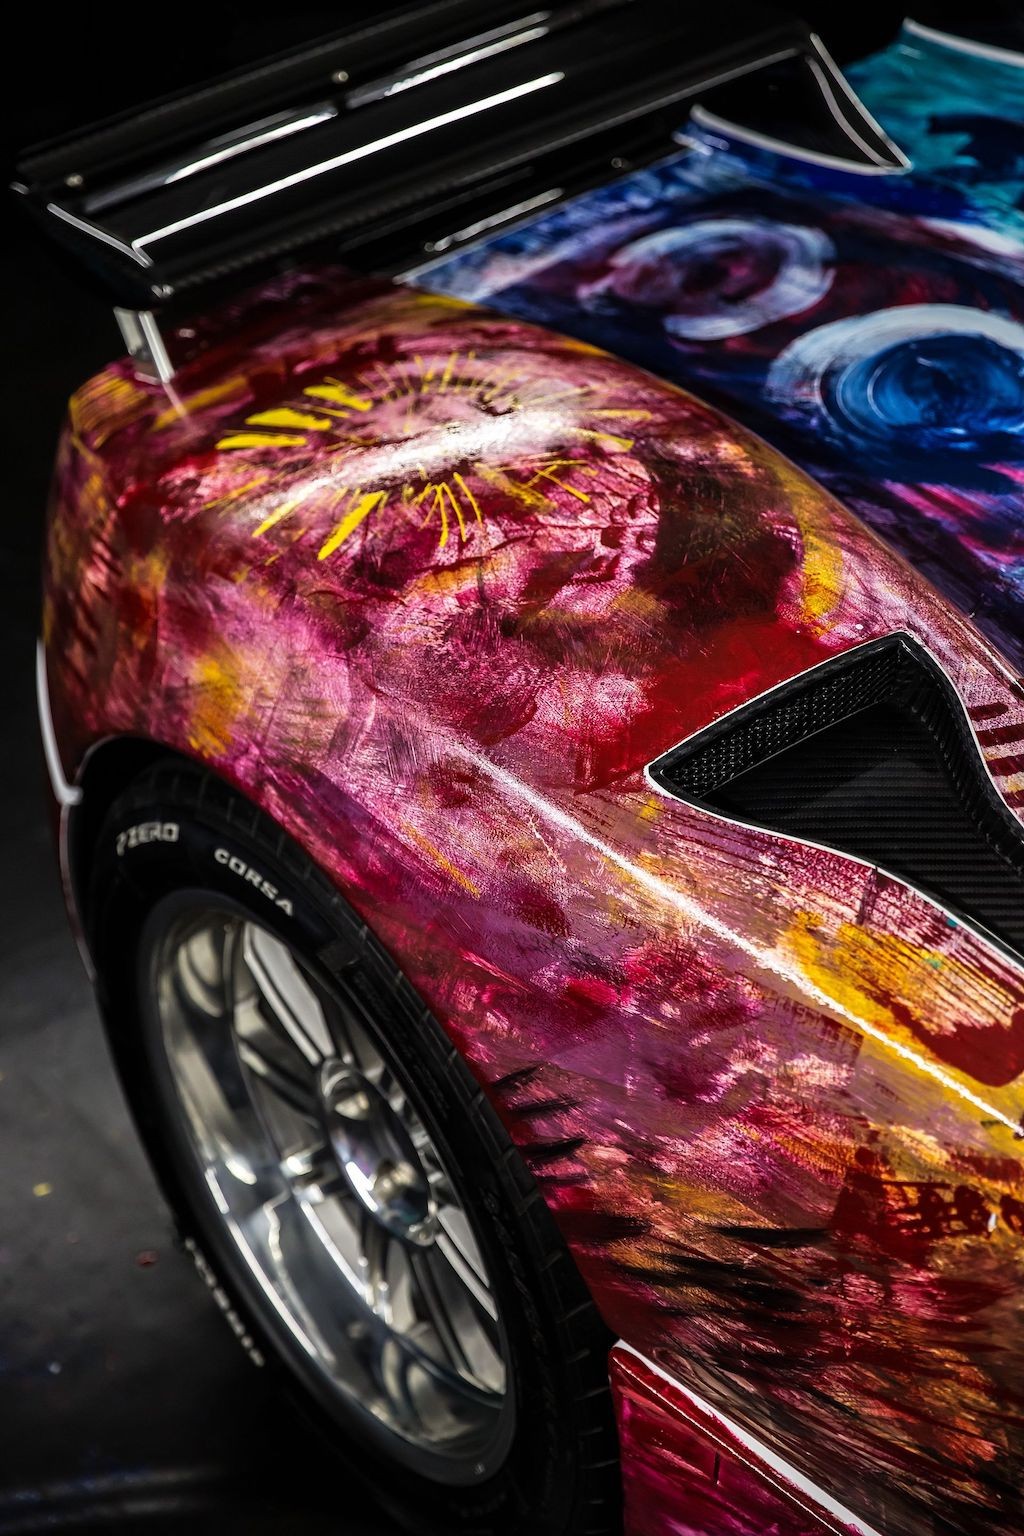 Siêu xe Pagani Zonda biến thành tác phẩm nghệ thuật 4 bánh ảnh 6